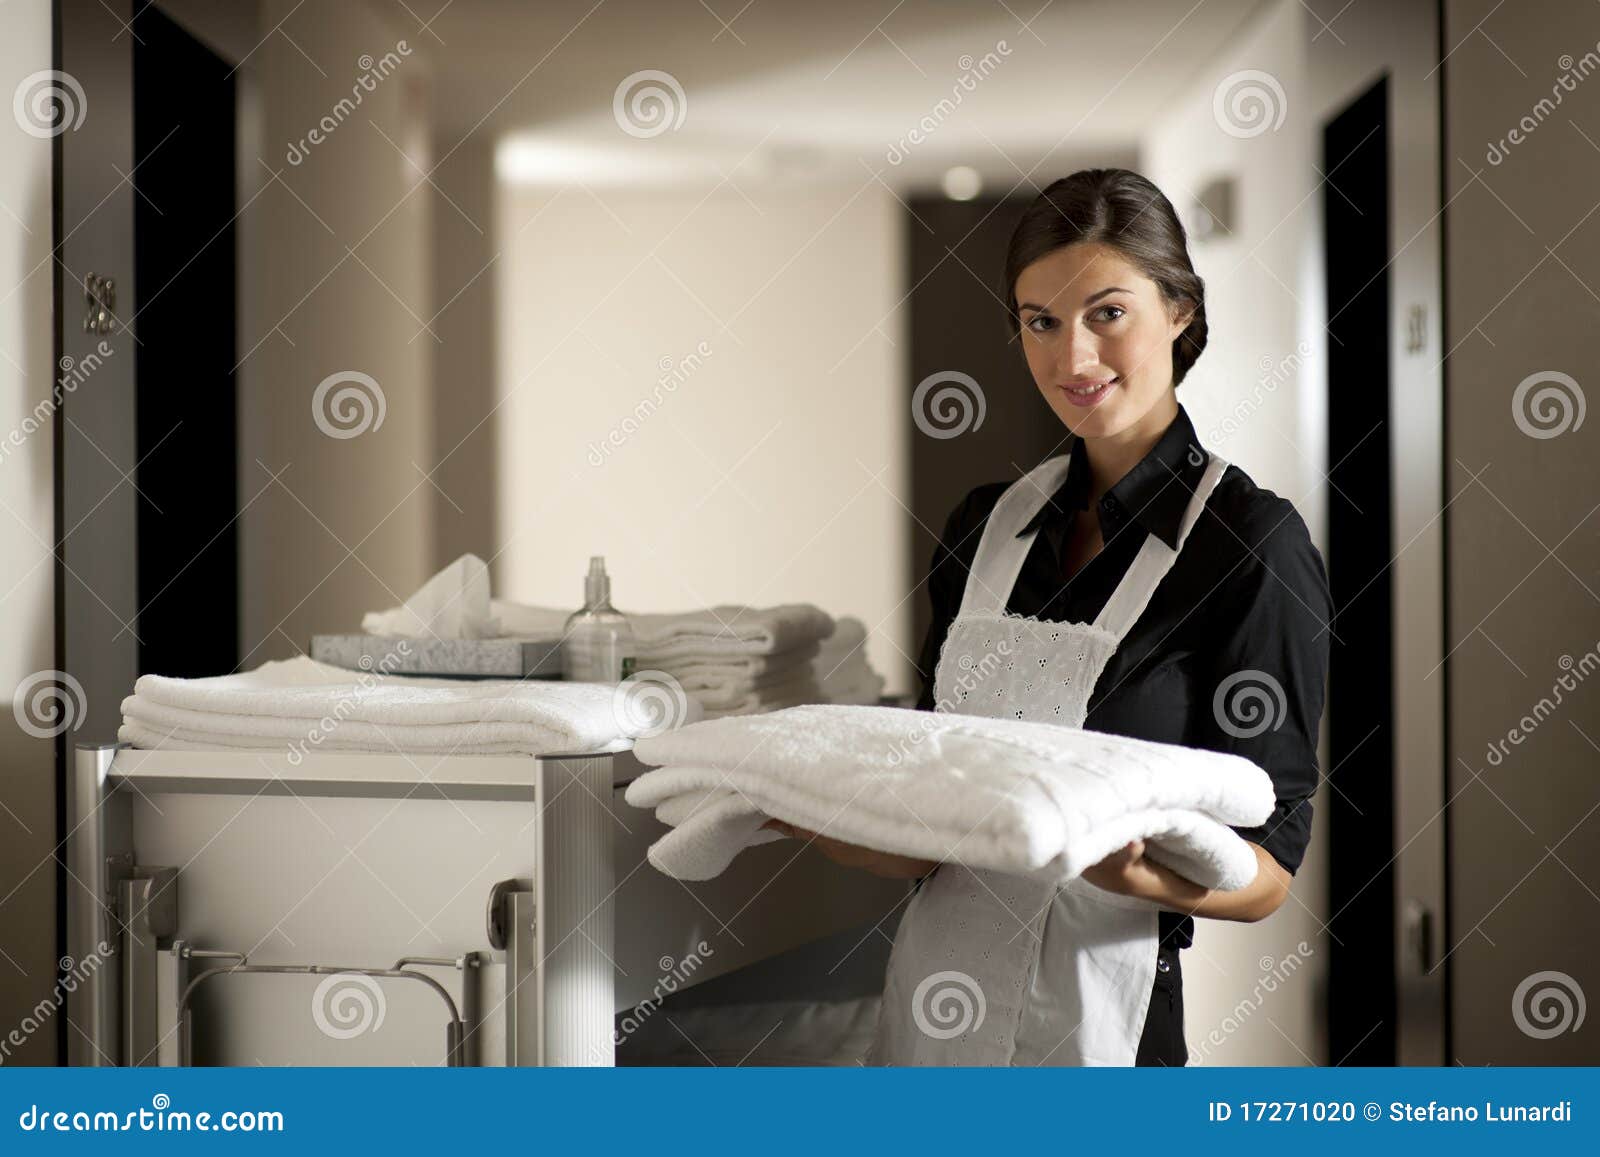 maid at work